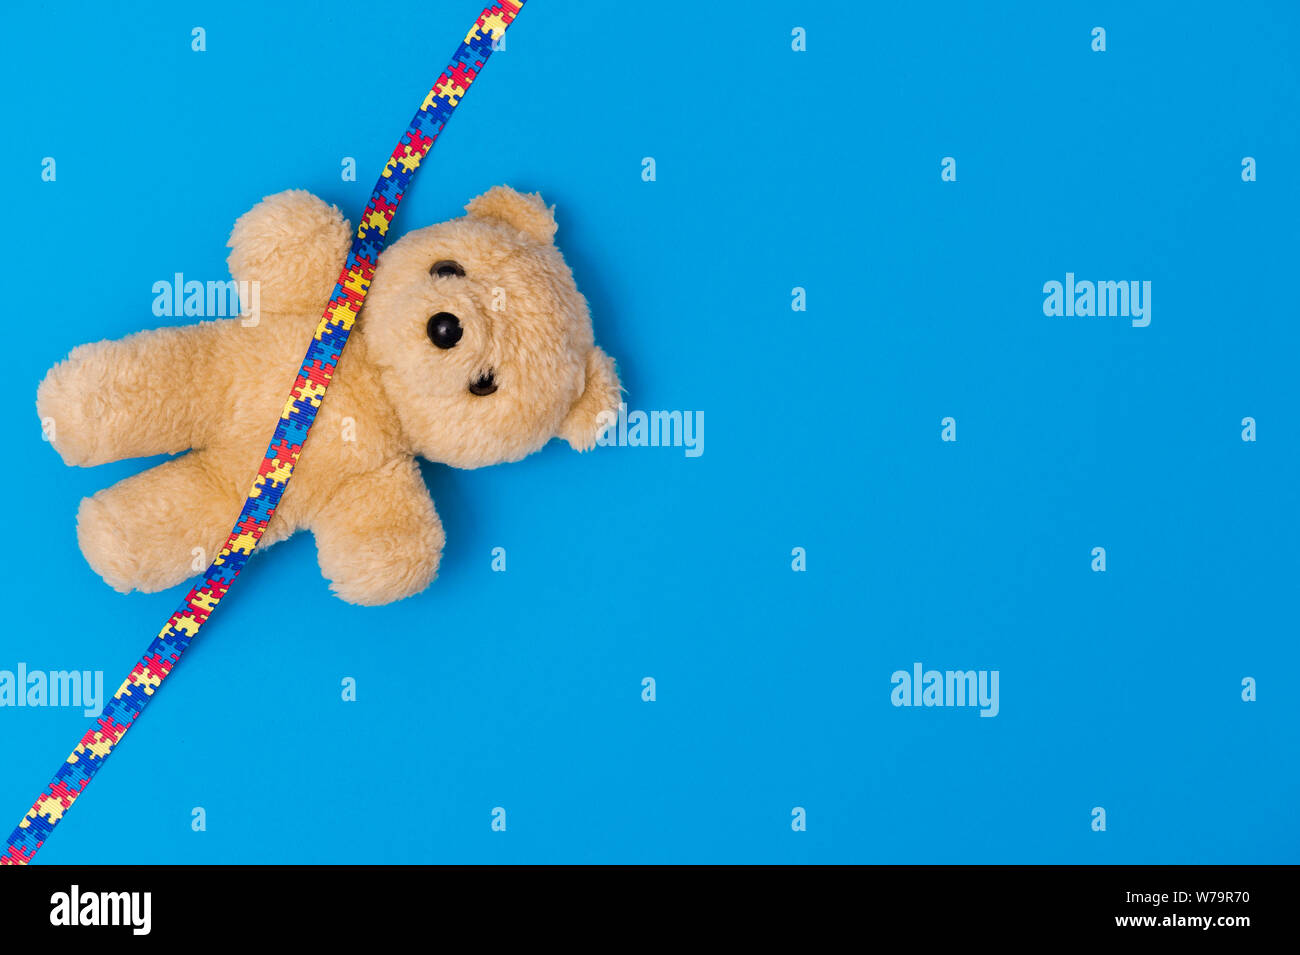 Welt Autismus Bewußtsein Tag, psychische Gesundheit Konzept mit Teddybär und Farbband puzzle Muster. Auf blauem Hintergrund Stockfoto